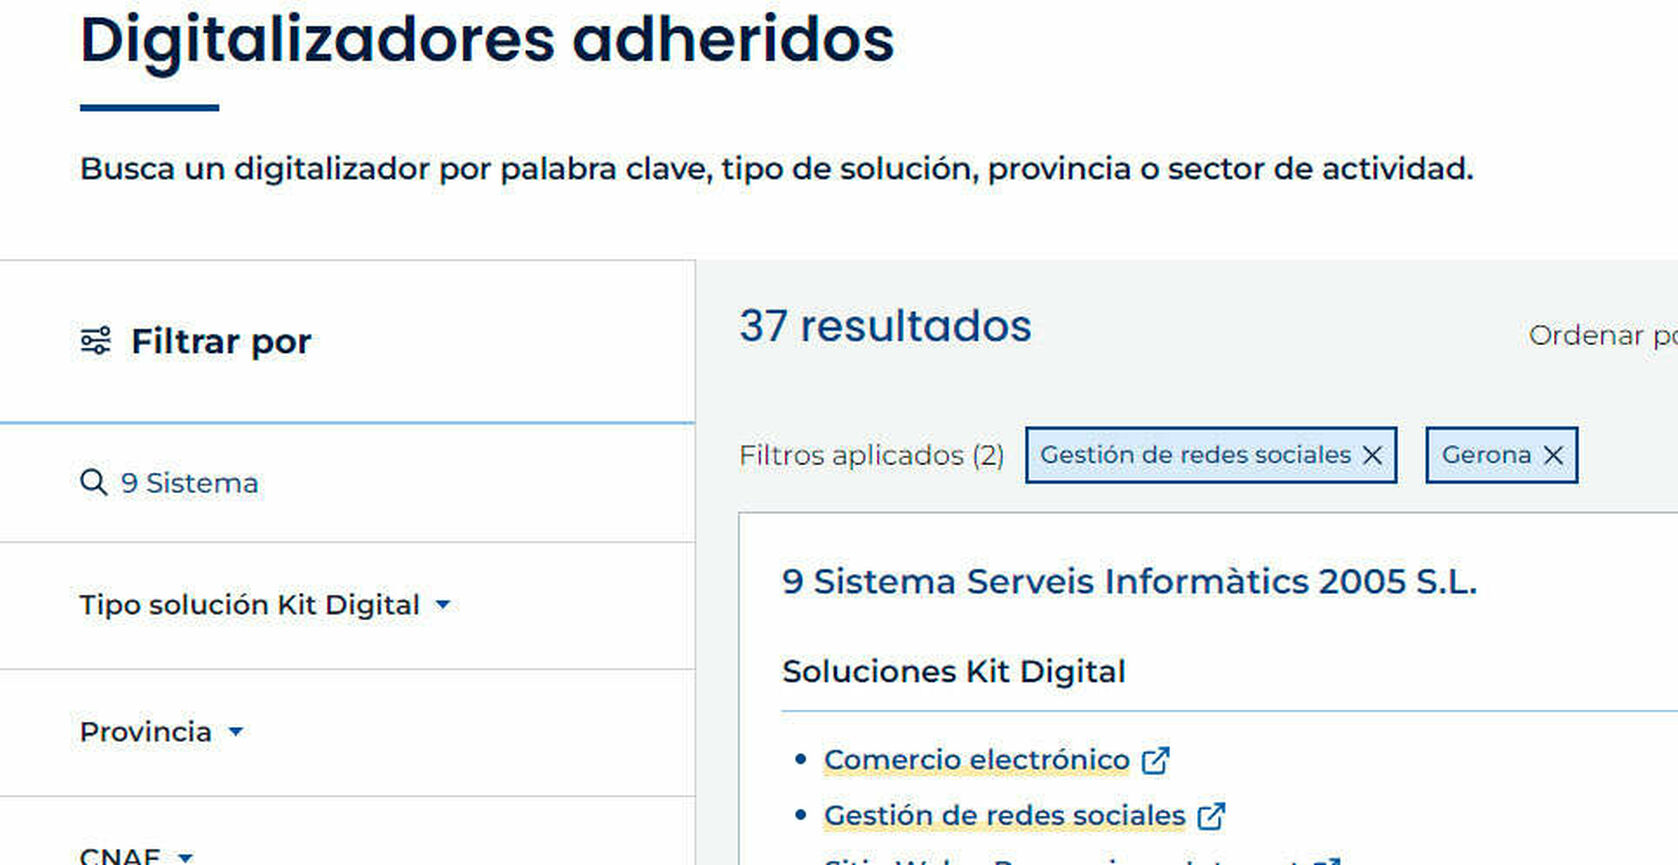 Digitaliza tu empresa con el programa Kit Digital de subvenciones hasta 12.000€!